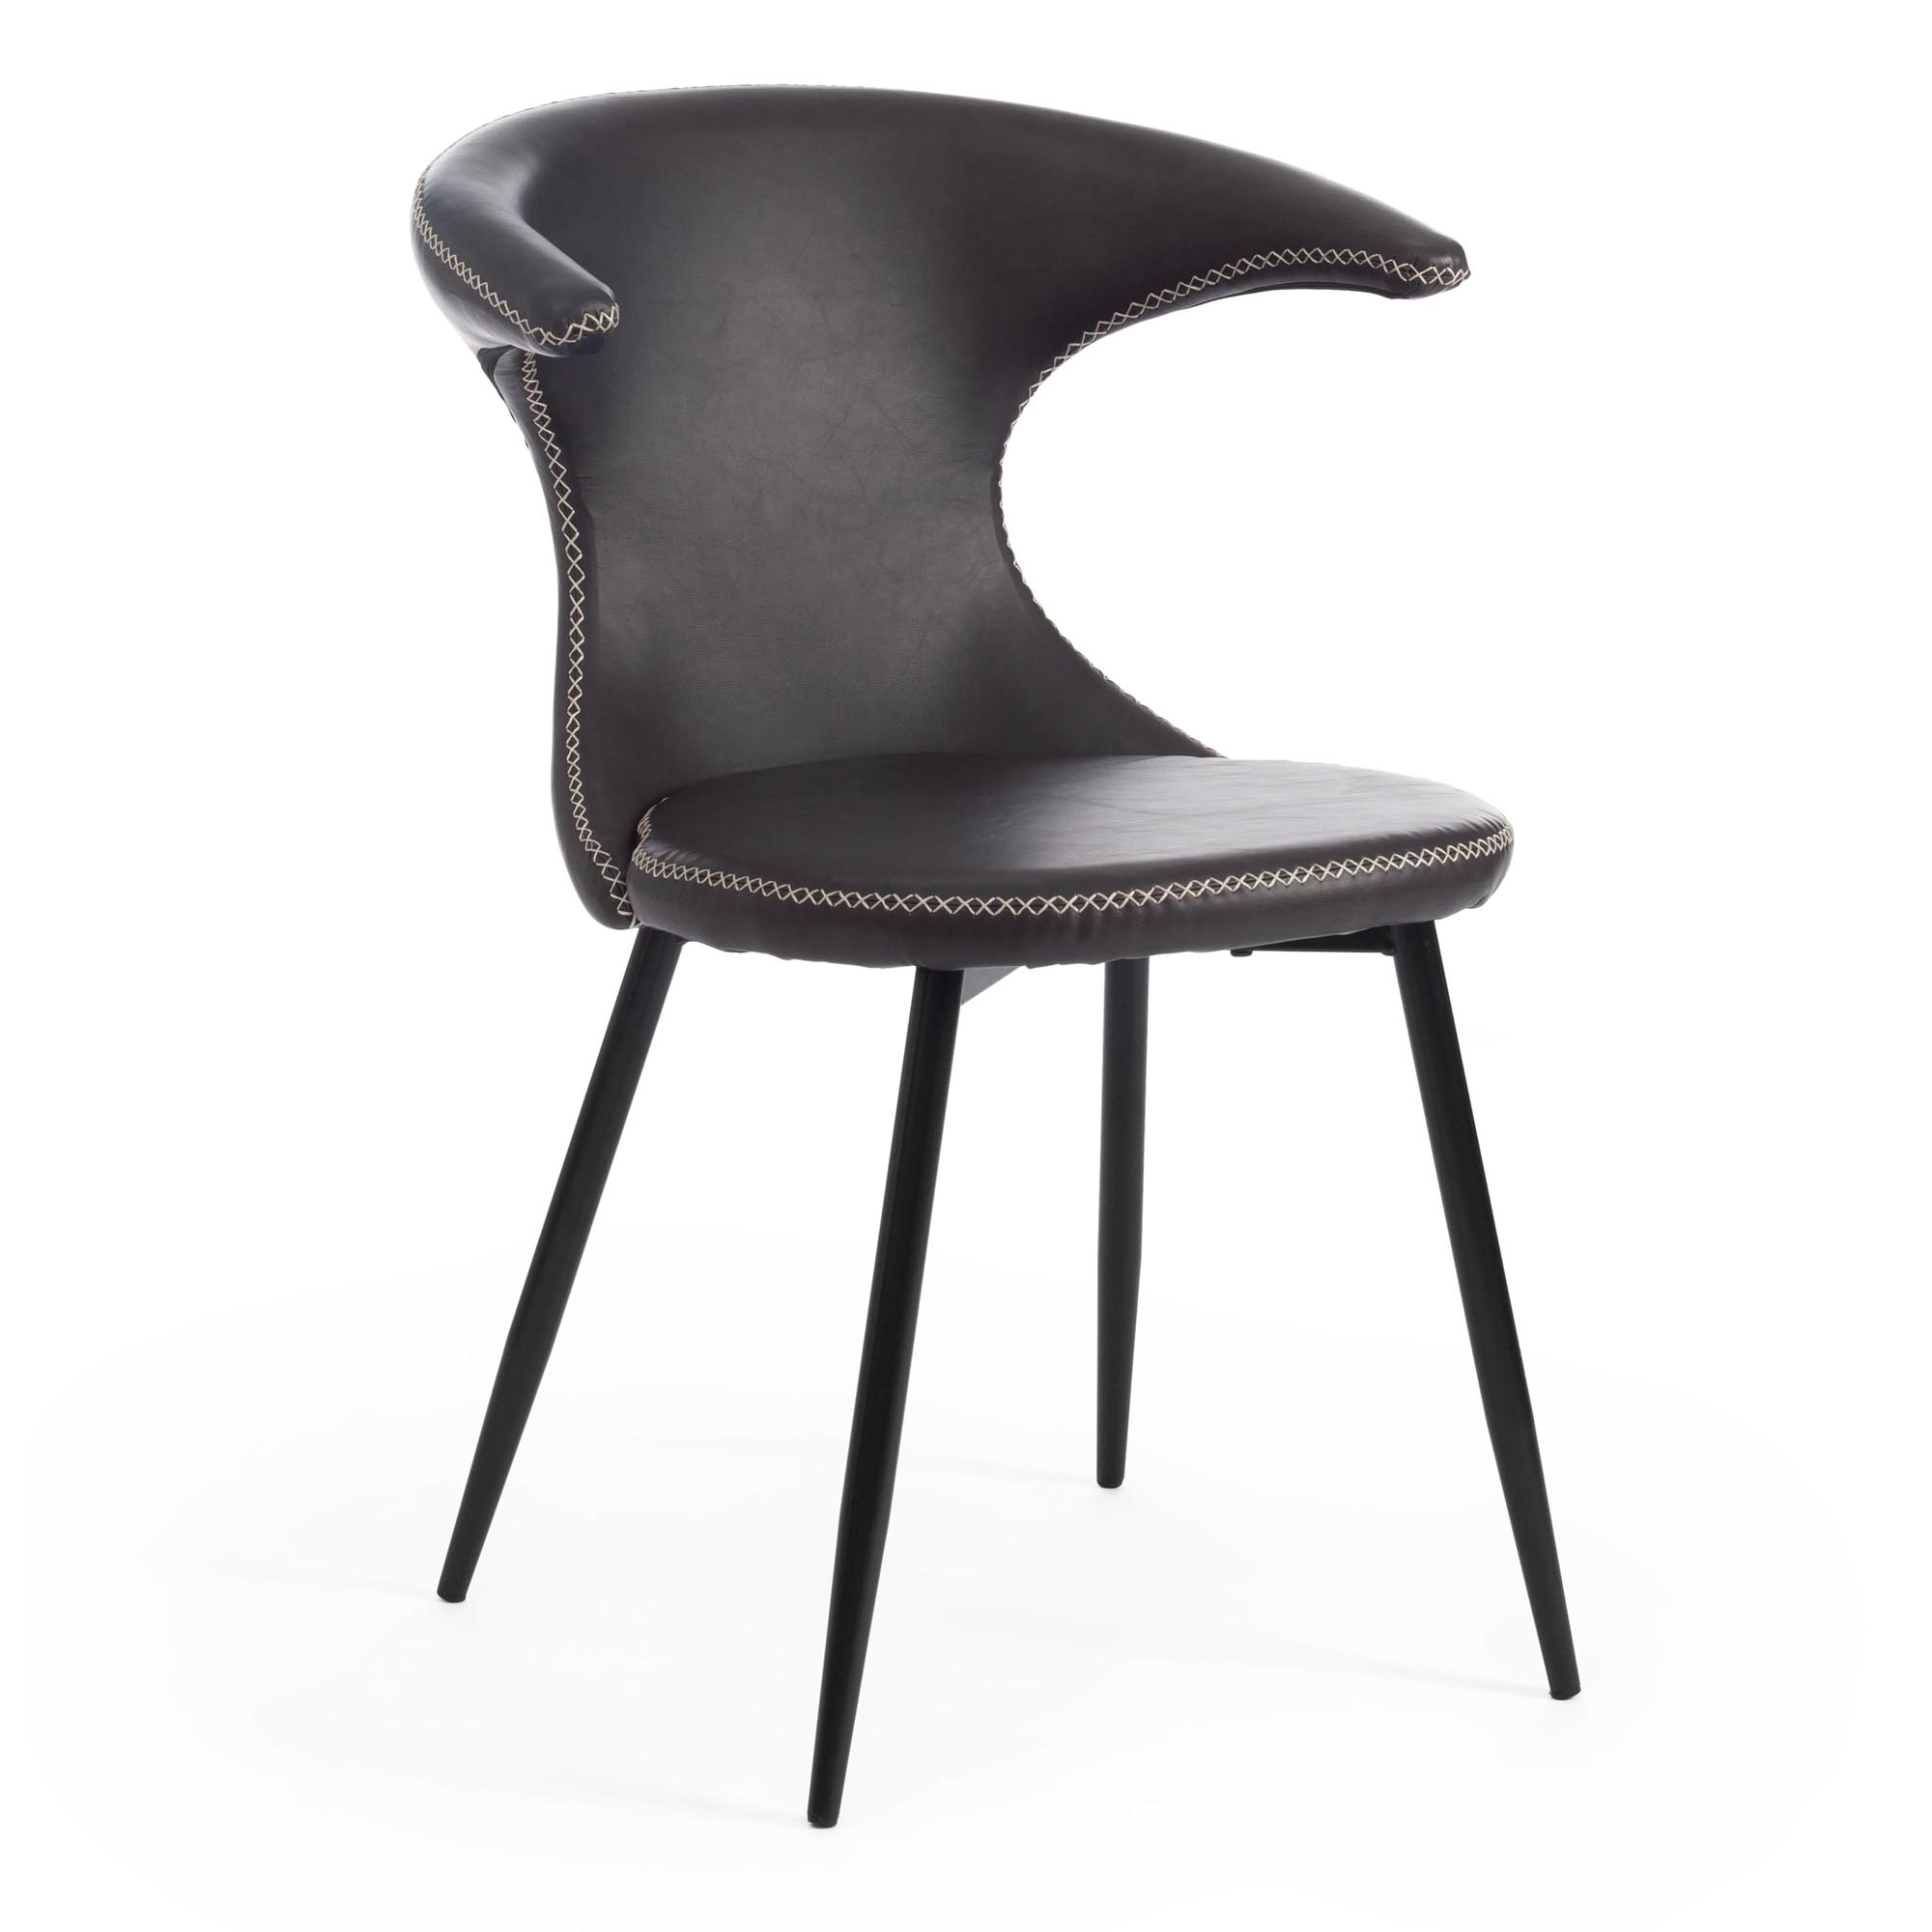 Стул TC Flair 60x56x78 см серый/черный стул besportble стул пластиковый ступенчатый стул высота 9 5 дюйма детский стул стул для детского сада кухни спальни гостиной